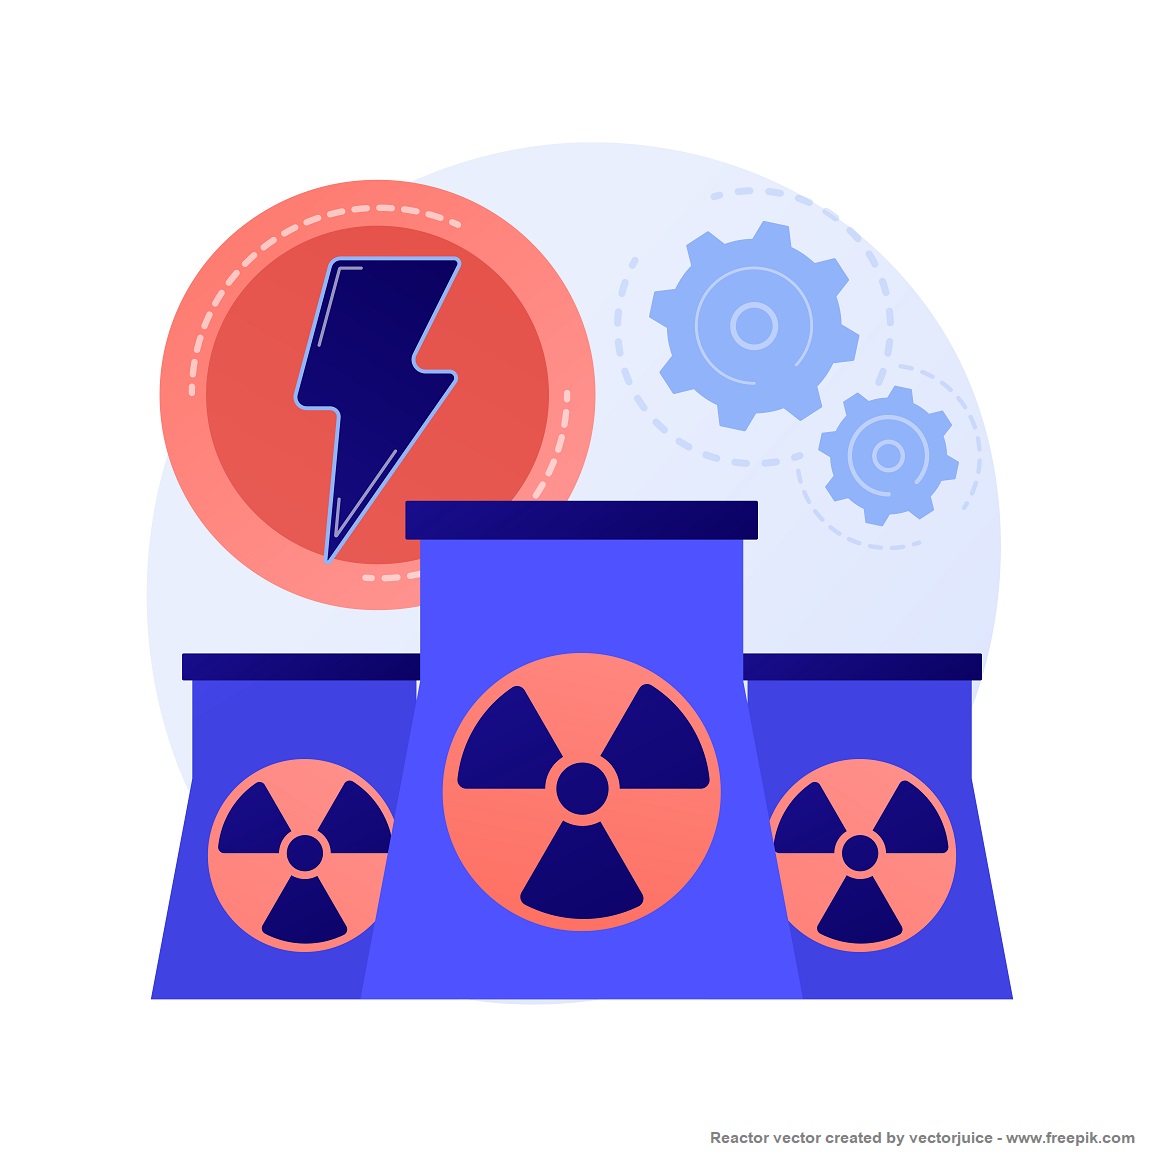 กระทรวงพลังงานเล็งประชาพิจารณ์โรงไฟฟ้านิวเคลียร์เป็นทางเลือกในแผน PDP 2023